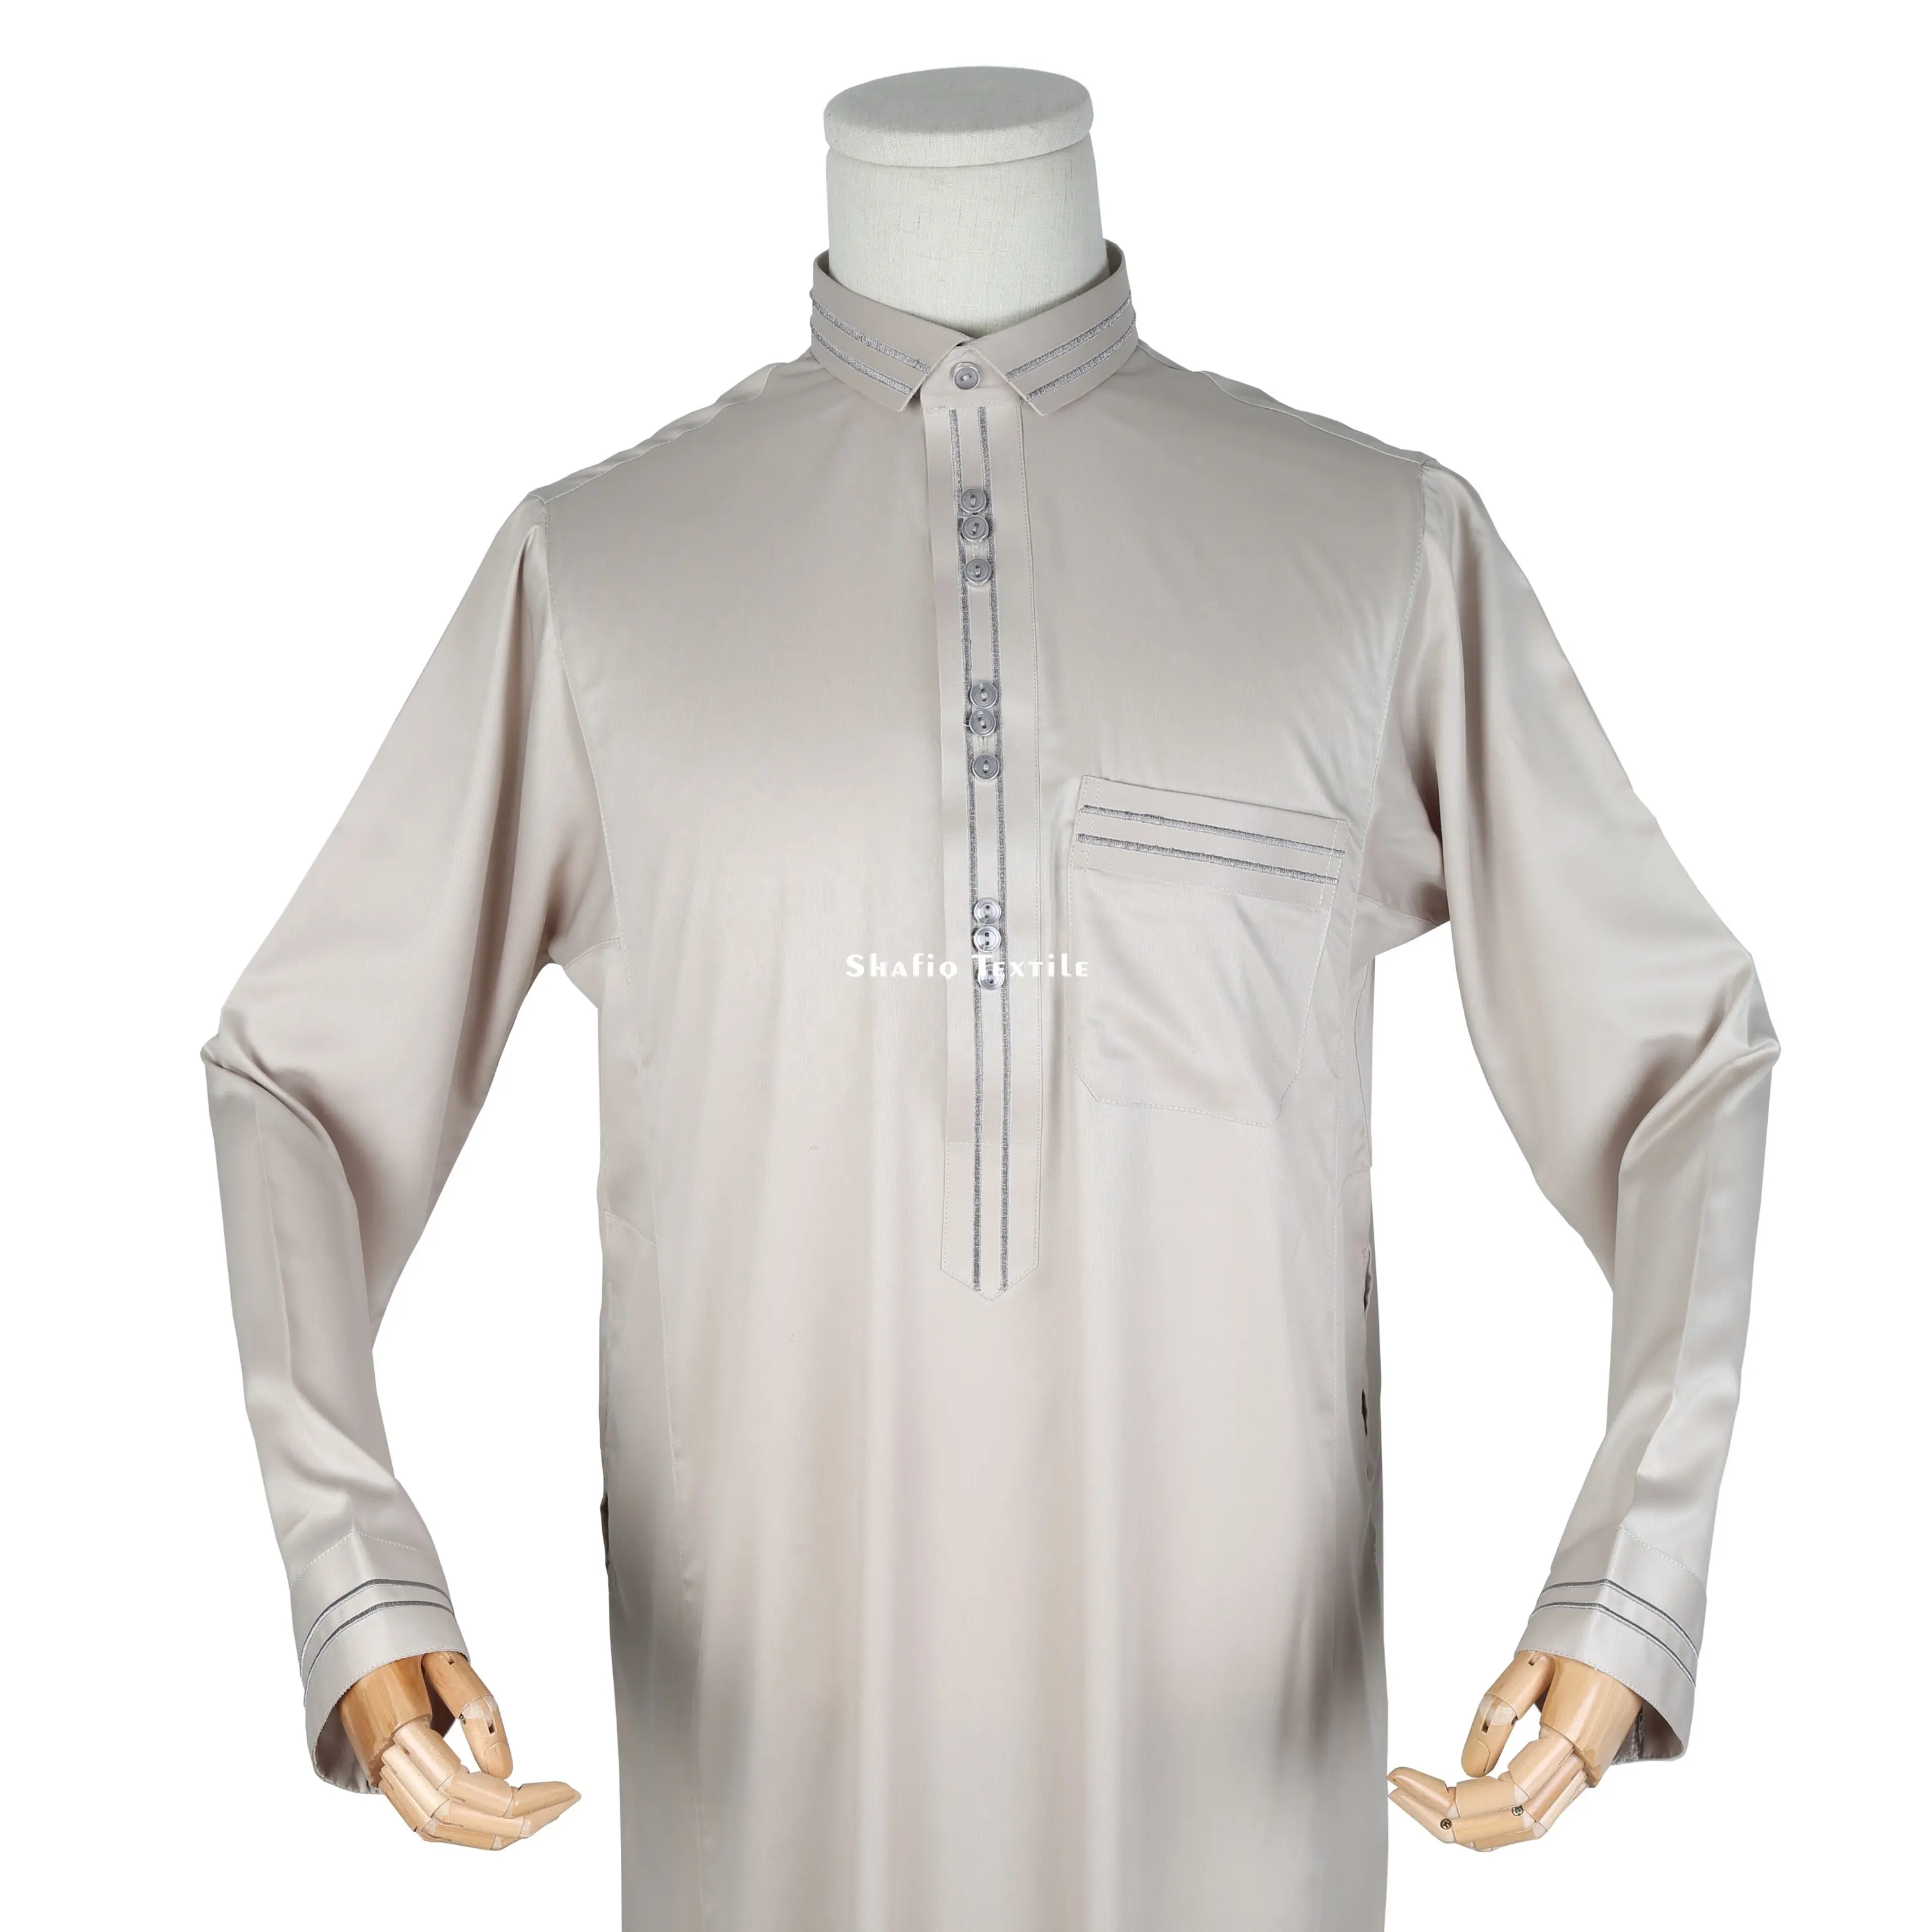 האחרון עיצוב מוצק צבע רקמת Daffah קיץ מבריק מסורתי איש קפטן Jubah אתני Jilbab Boubou שמלה מוסלמית